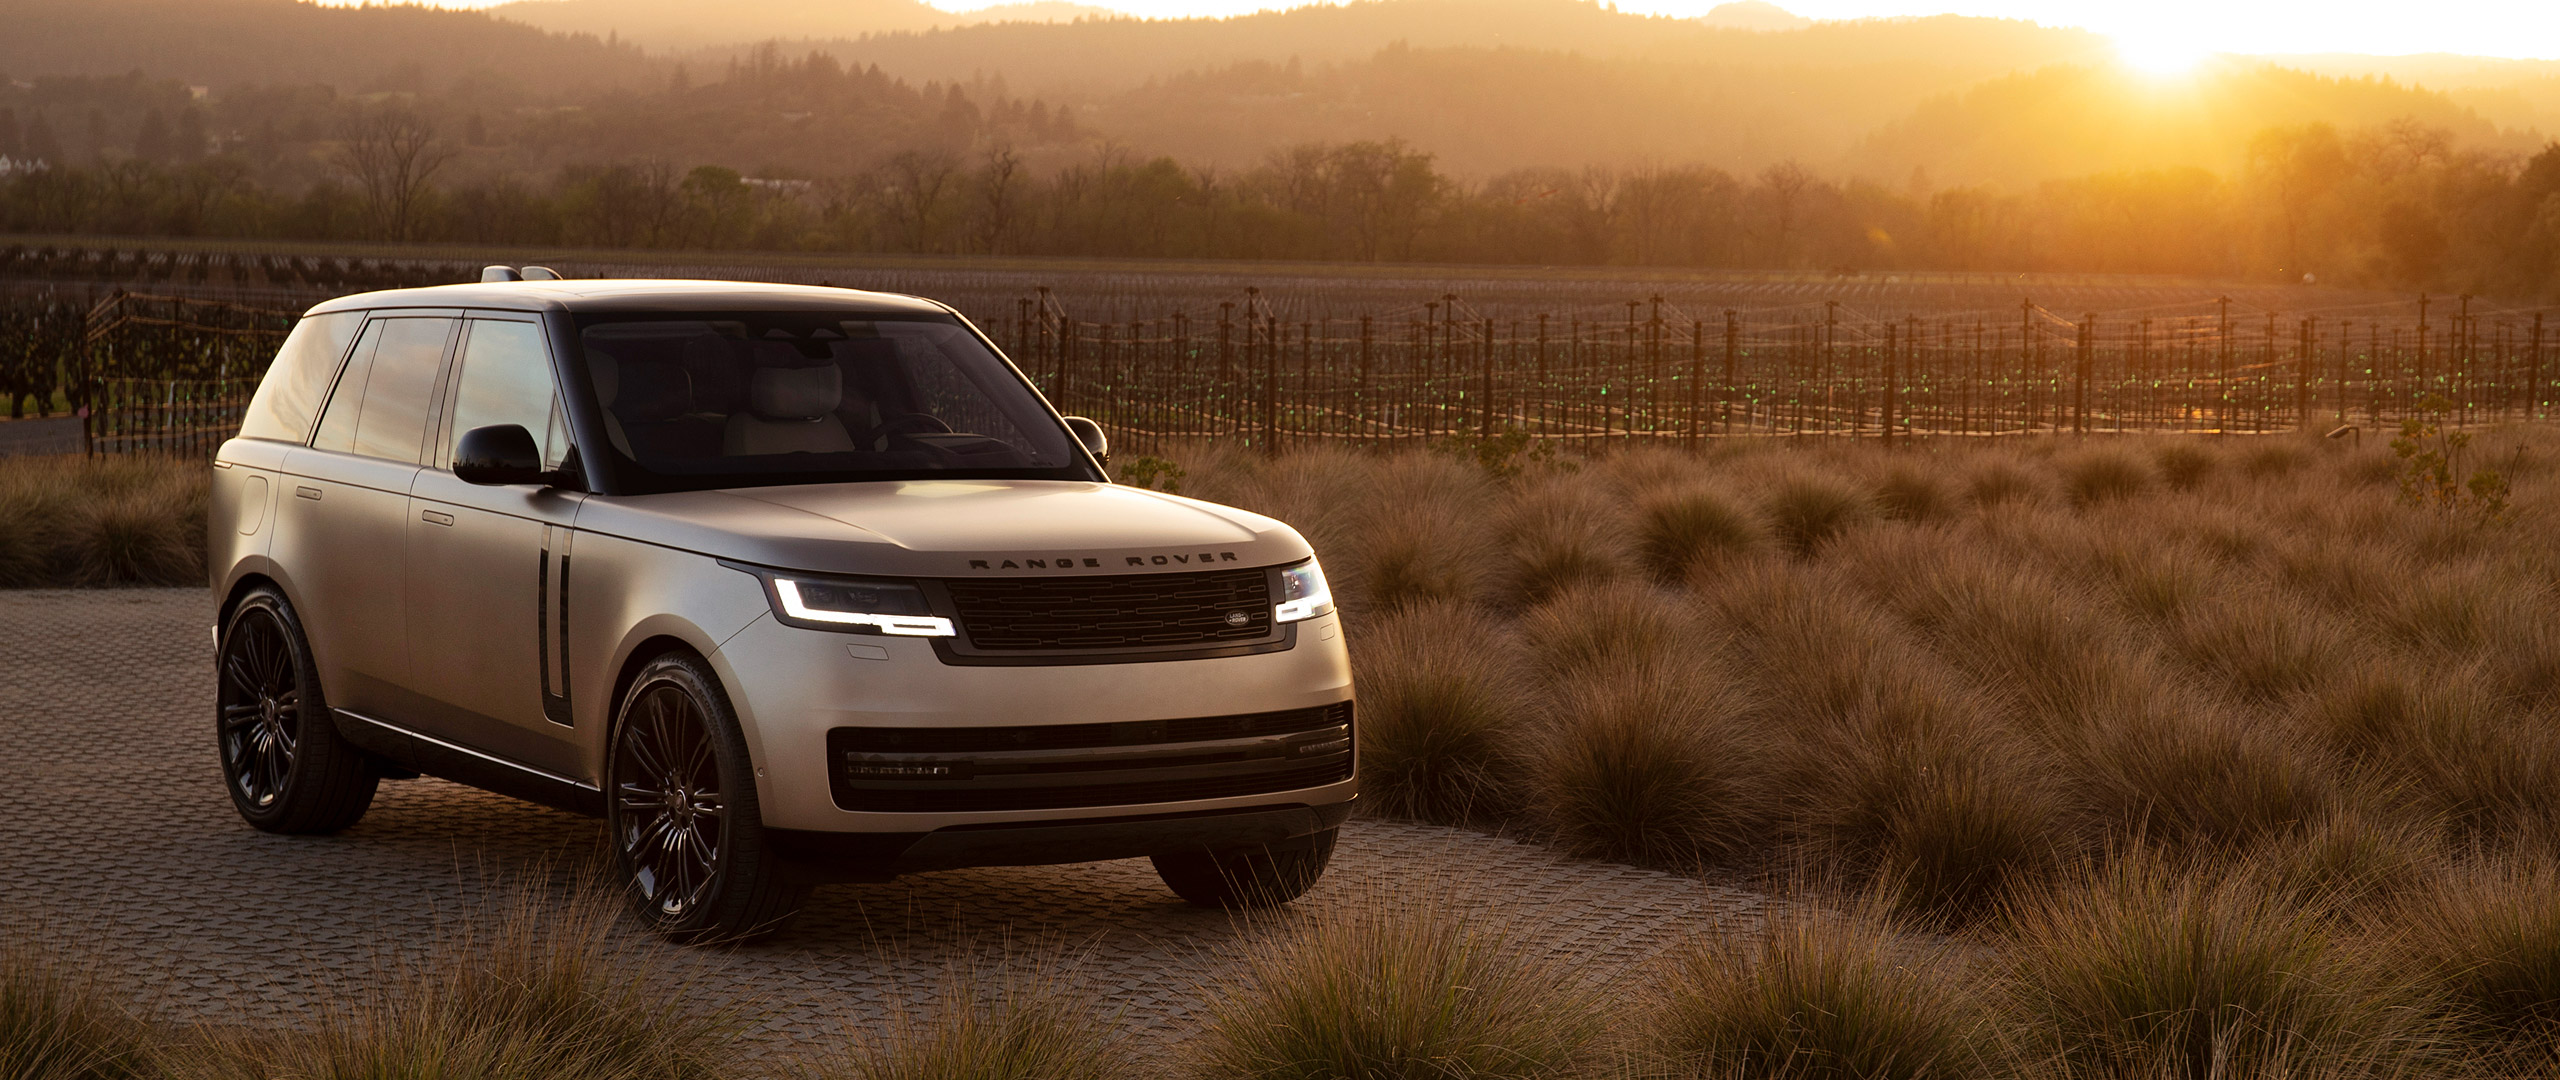  2022-Land-Rover-Range-Rover Wallpaper.